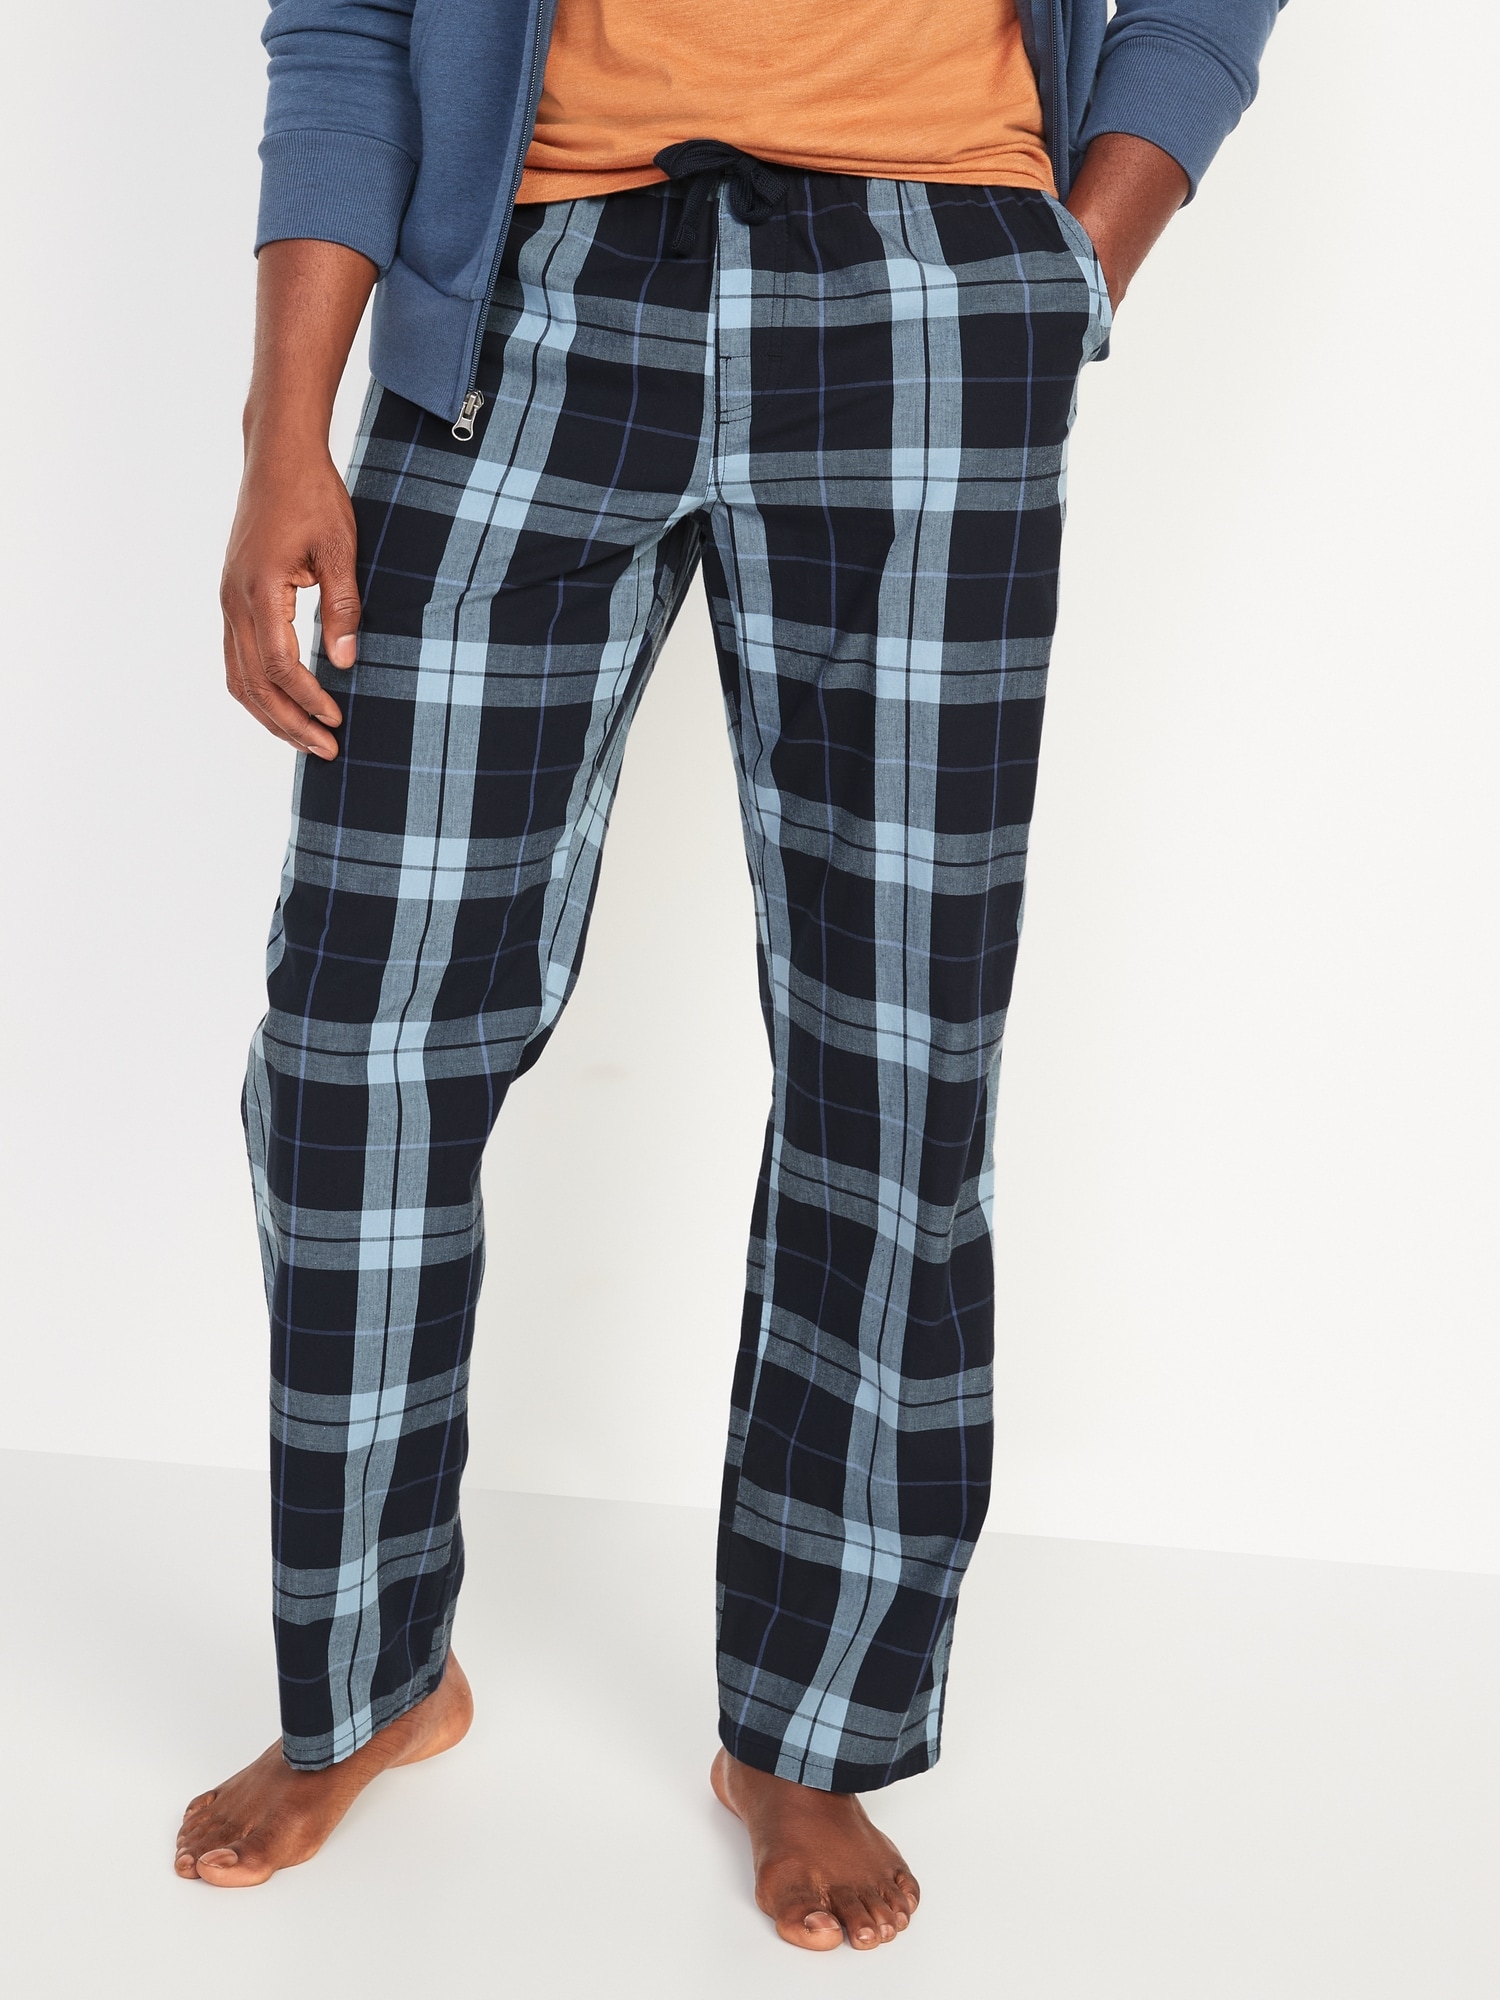 Poplin Pajama Pants for Men | Old Navy